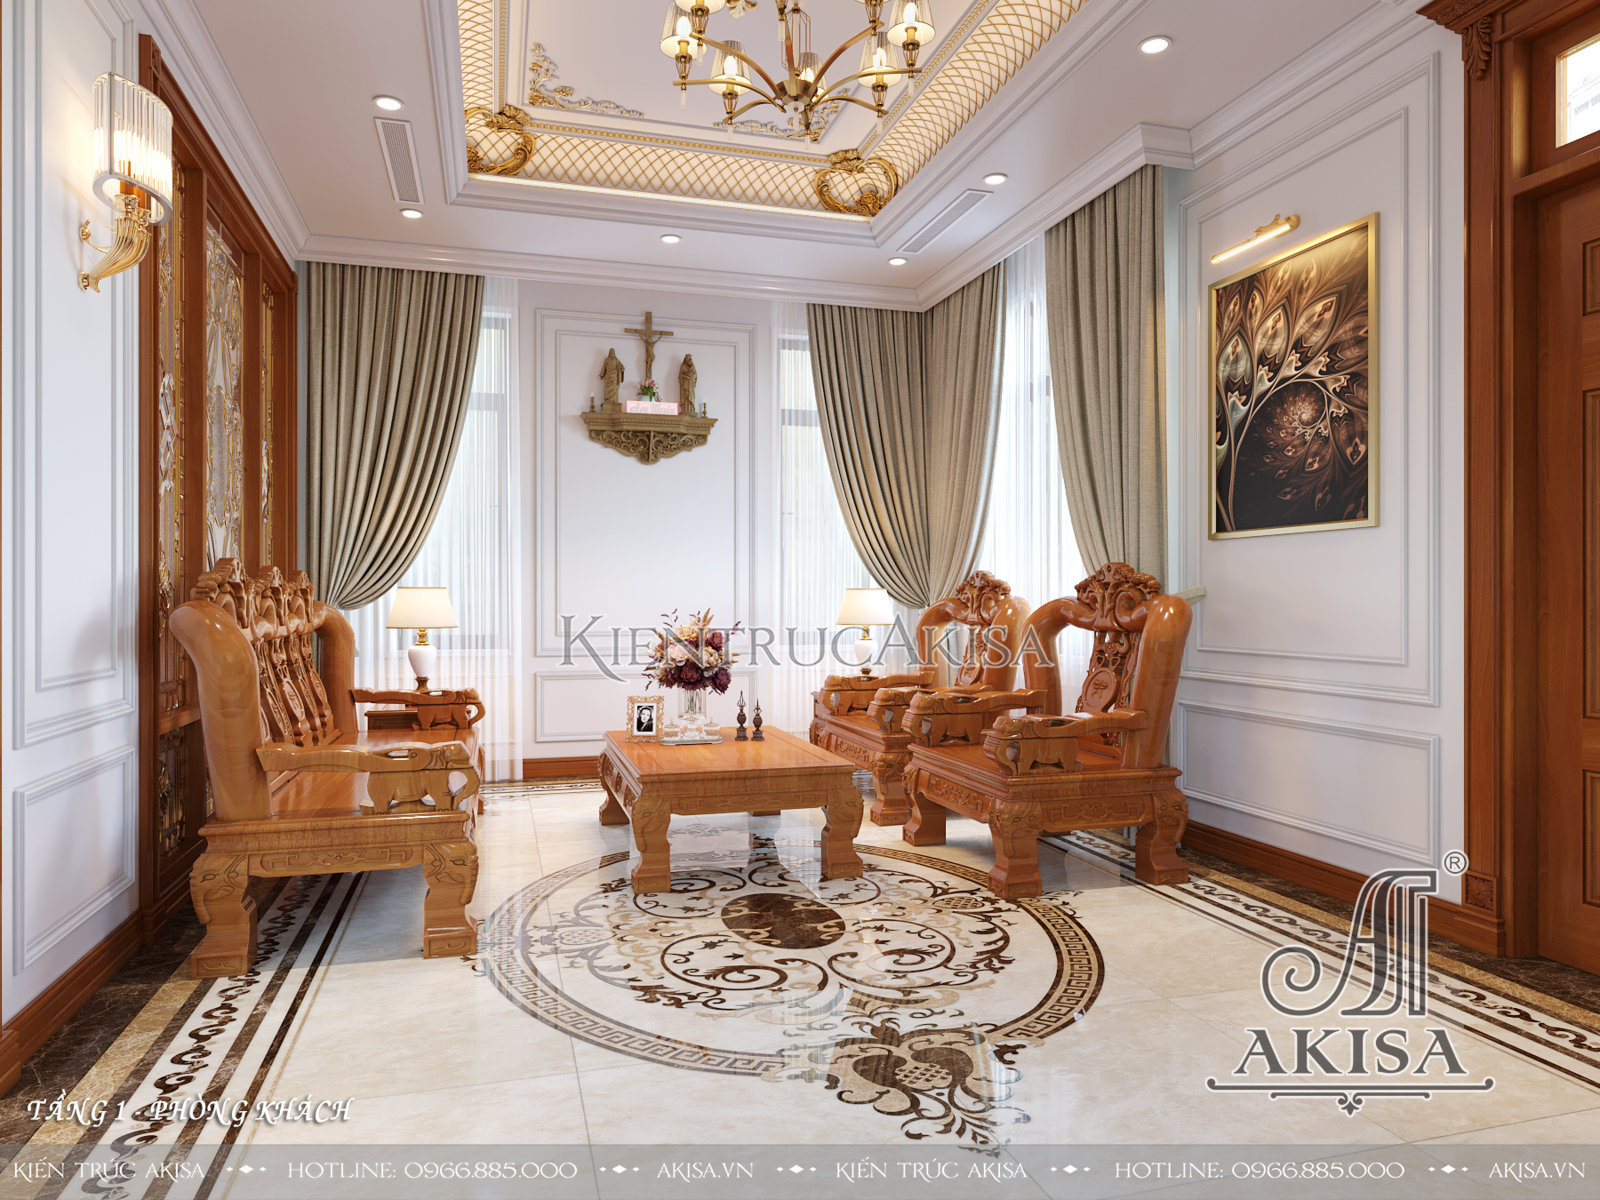 Mẫu nội thất nhà đẹp 2 tầng phong cách tân cổ điển kết hợp hiện đại - Phòng khách